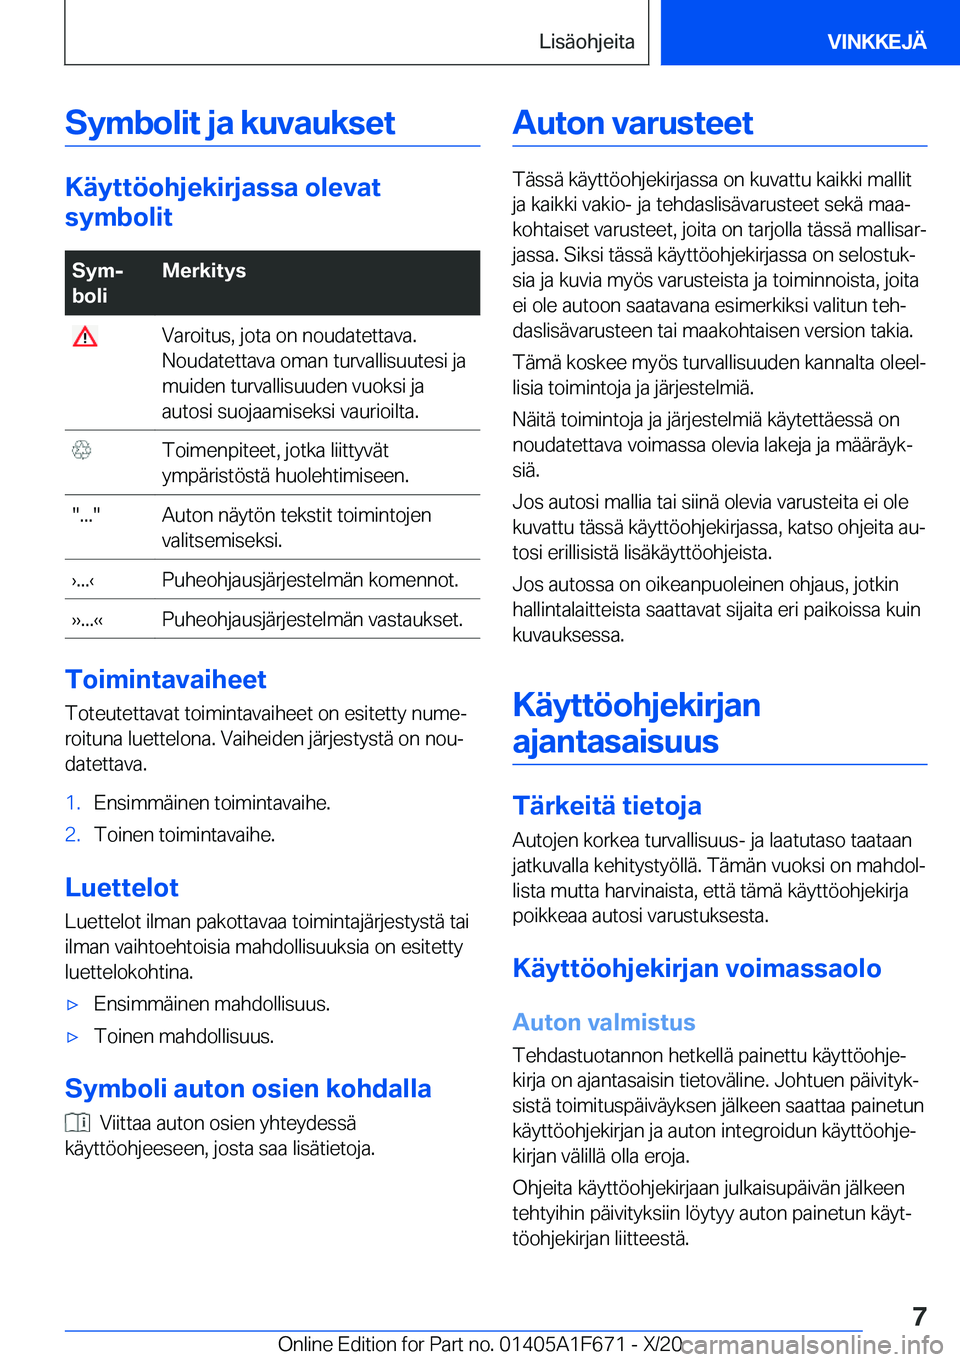 BMW X4 2021  Omistajan Käsikirja (in Finnish) �S�y�m�b�o�l�i�t��j�a��k�u�v�a�u�k�s�e�t
�K�